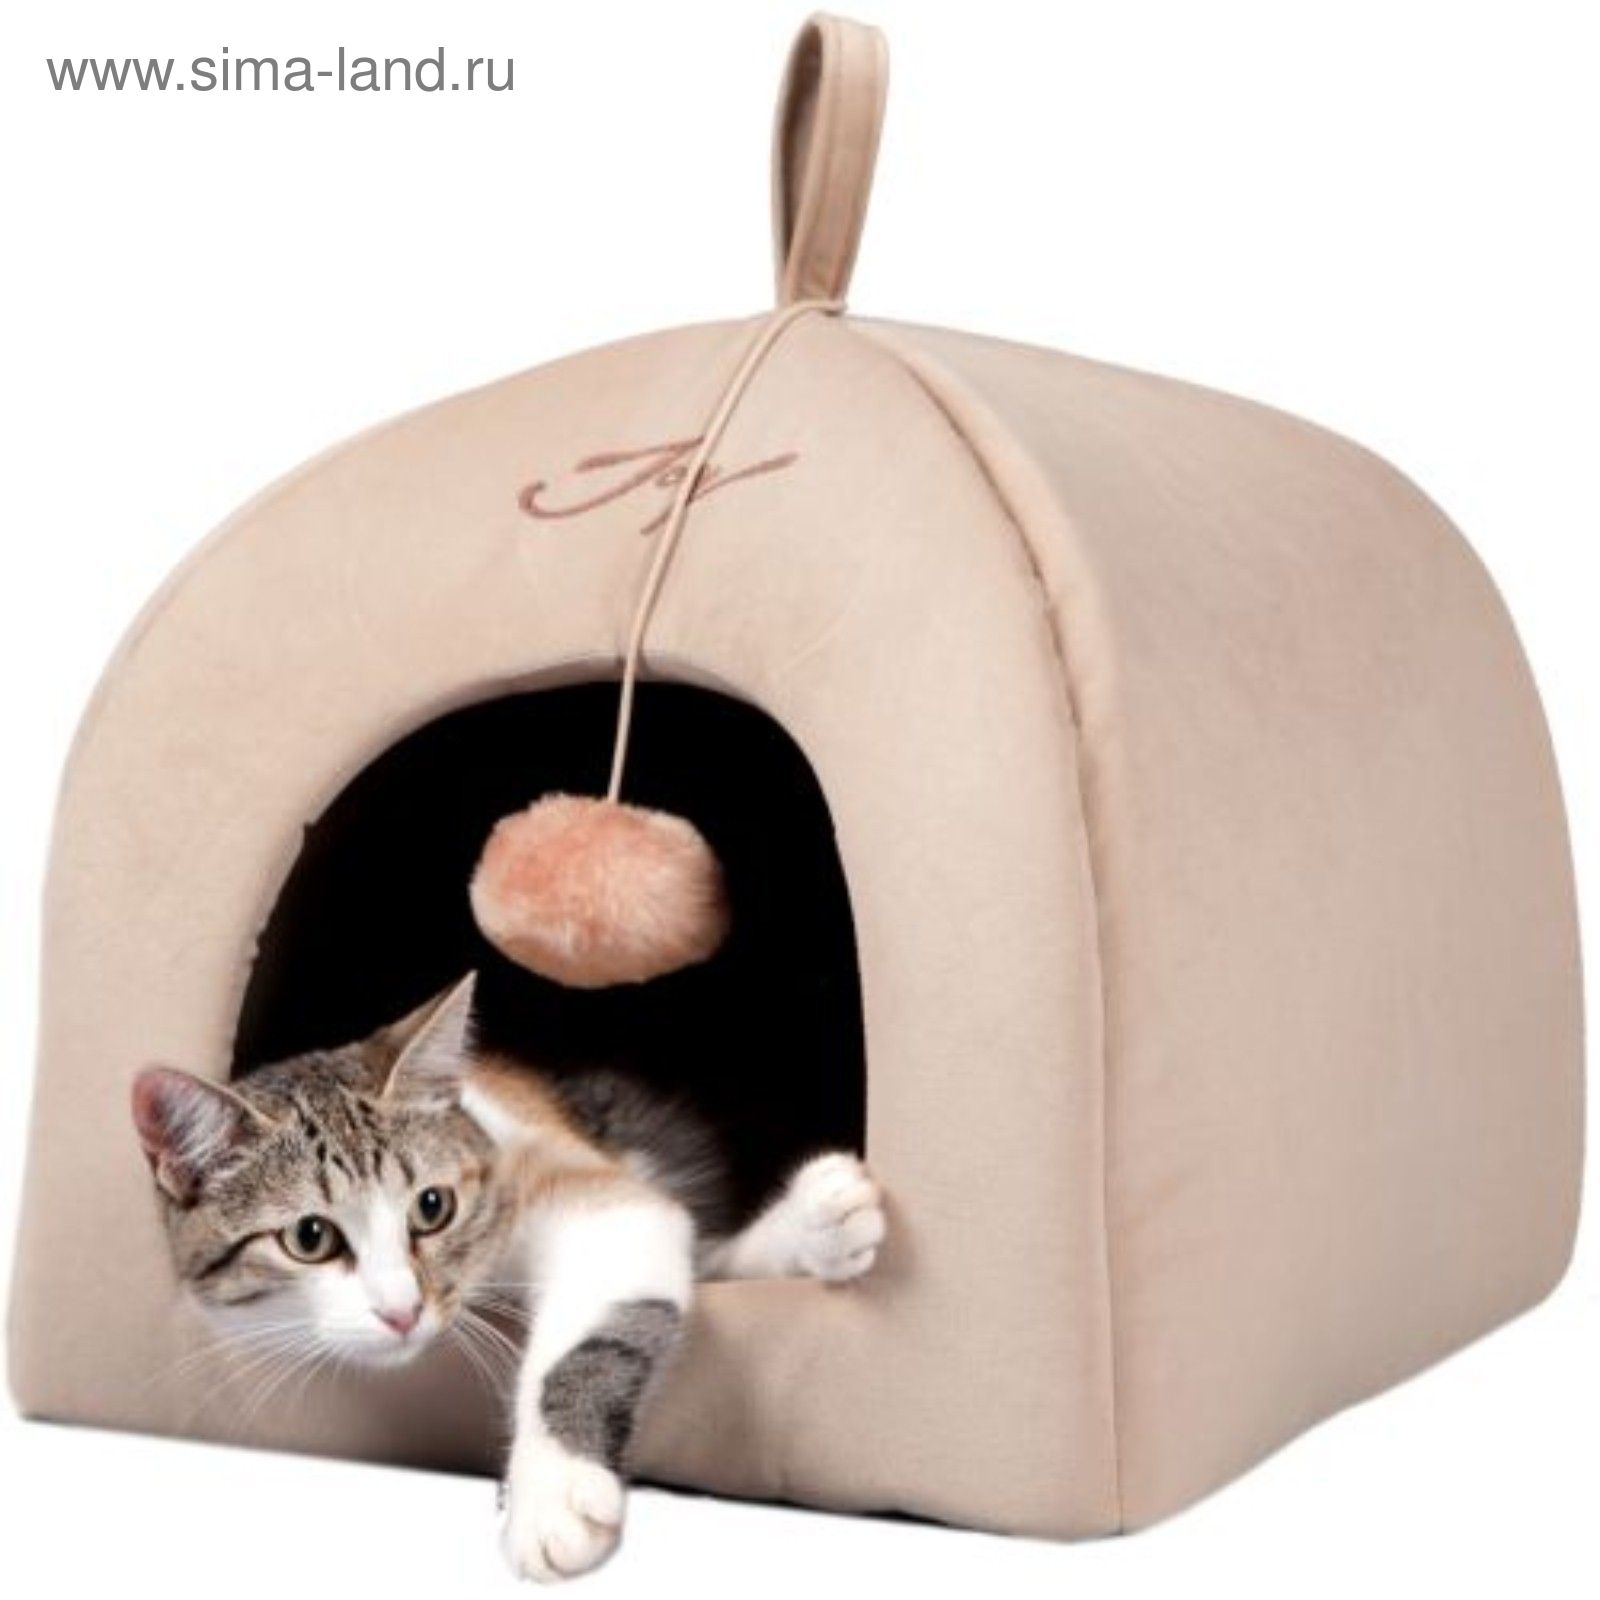 Домик Для Кошки Купить В Самаре